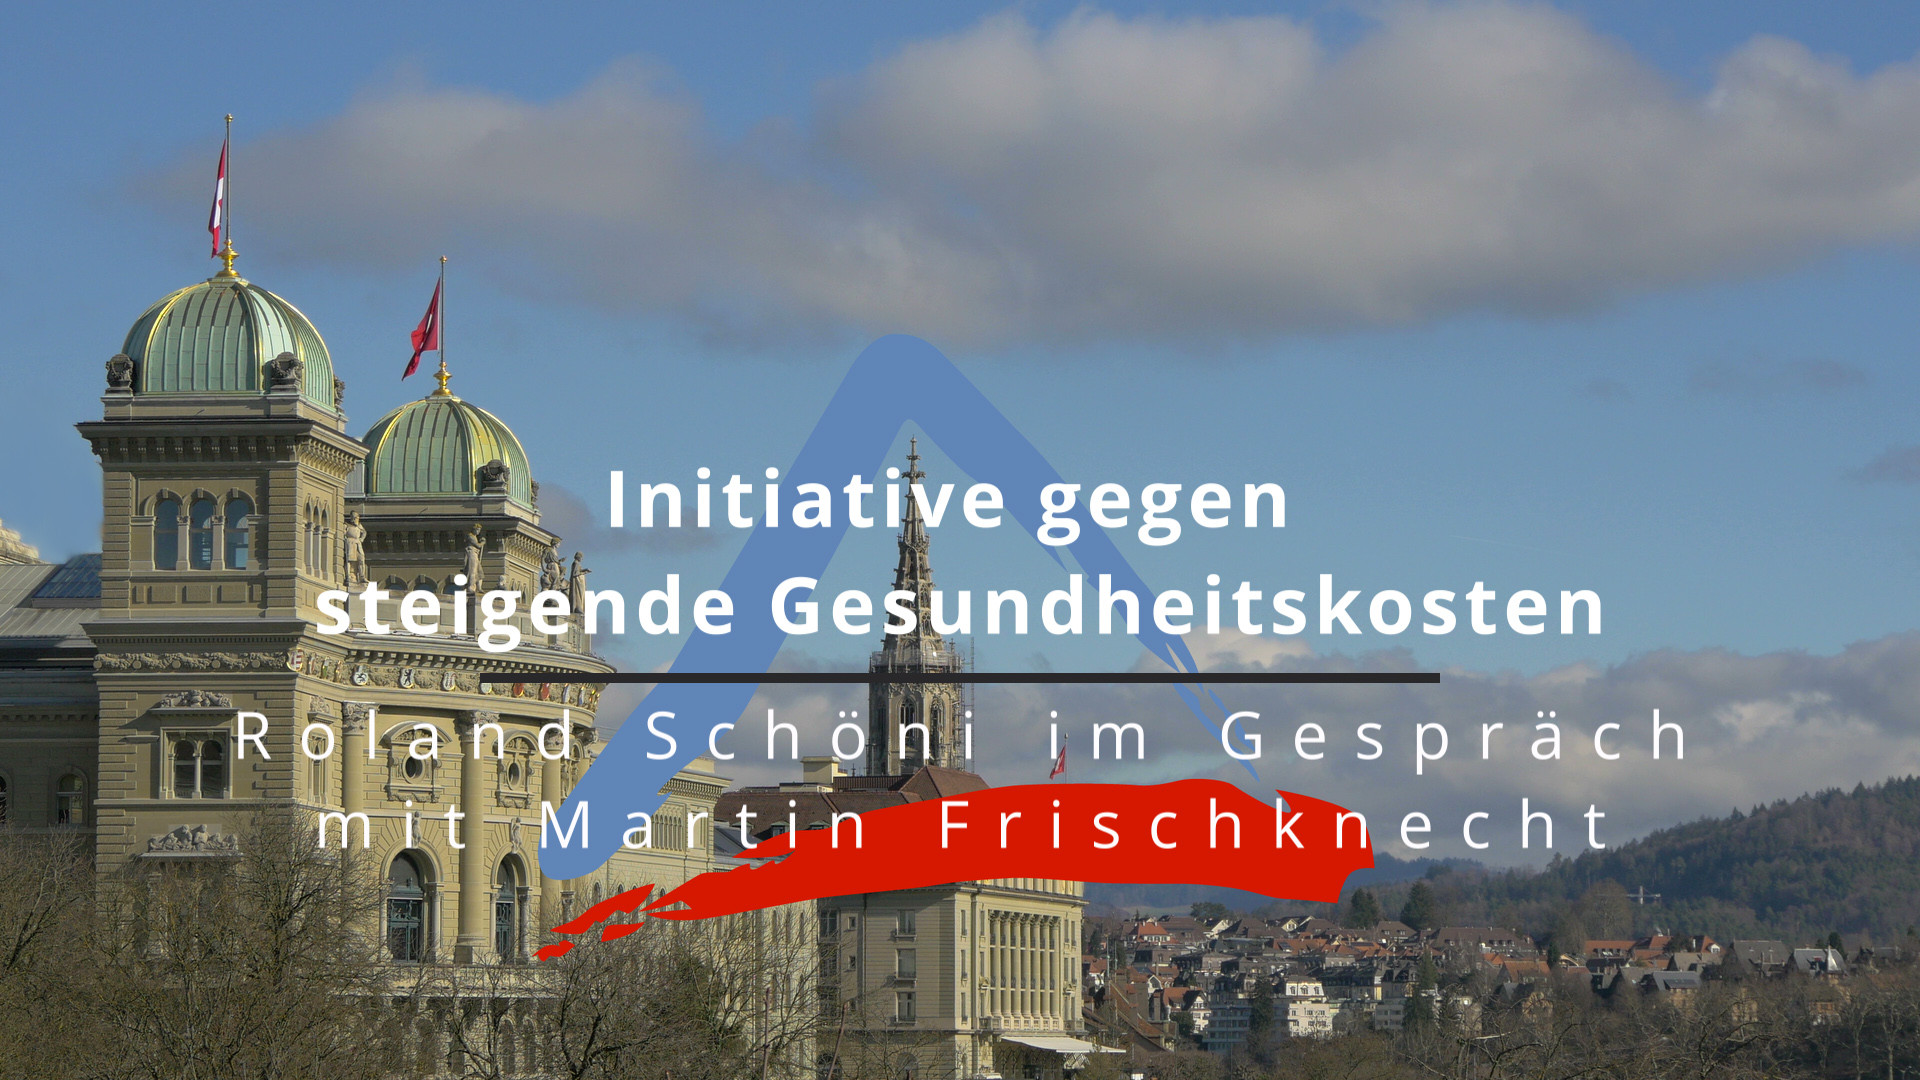 Initiative gegen steigende Gesundheitskosten - Roland Schöni im Gespräch mit Martin Frischknecht